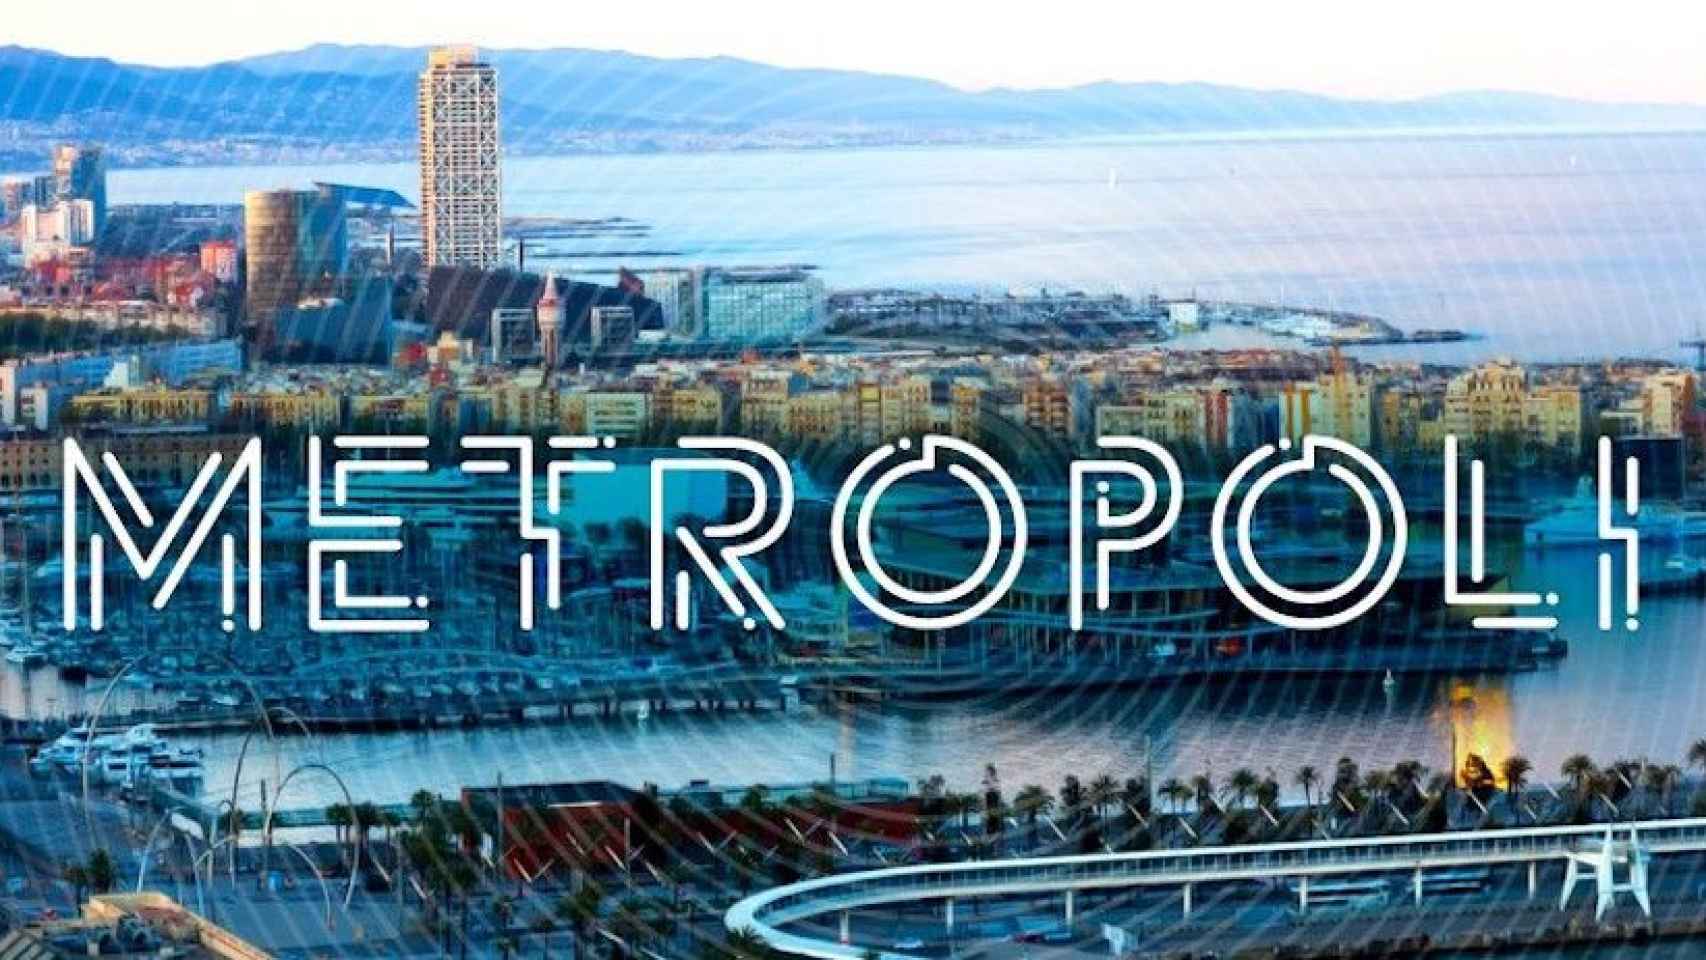 Imagen panorámica de Barcelona con el logo de Metrópoli Abierta